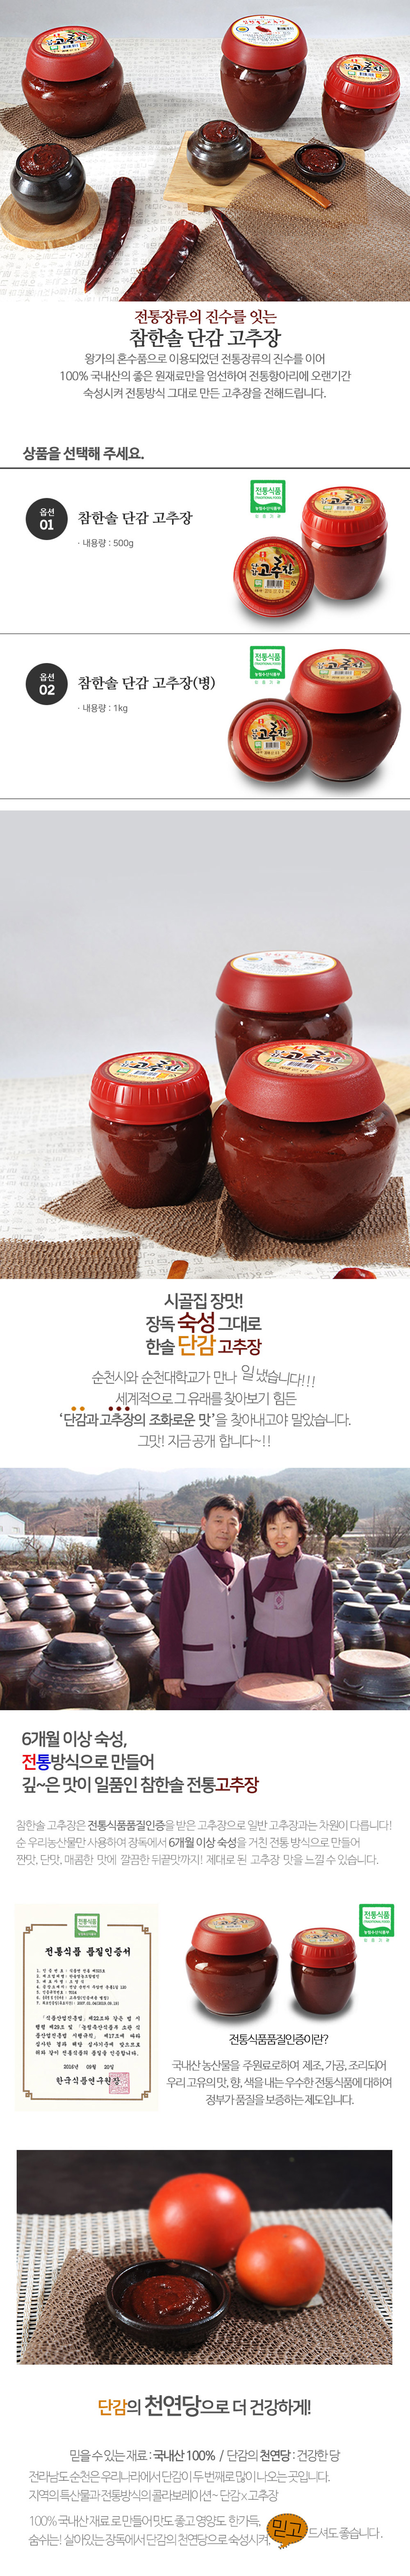 [순천로컬푸드_한솔] 천연당으로 더욱 건강한 단감고추장500g/1kg